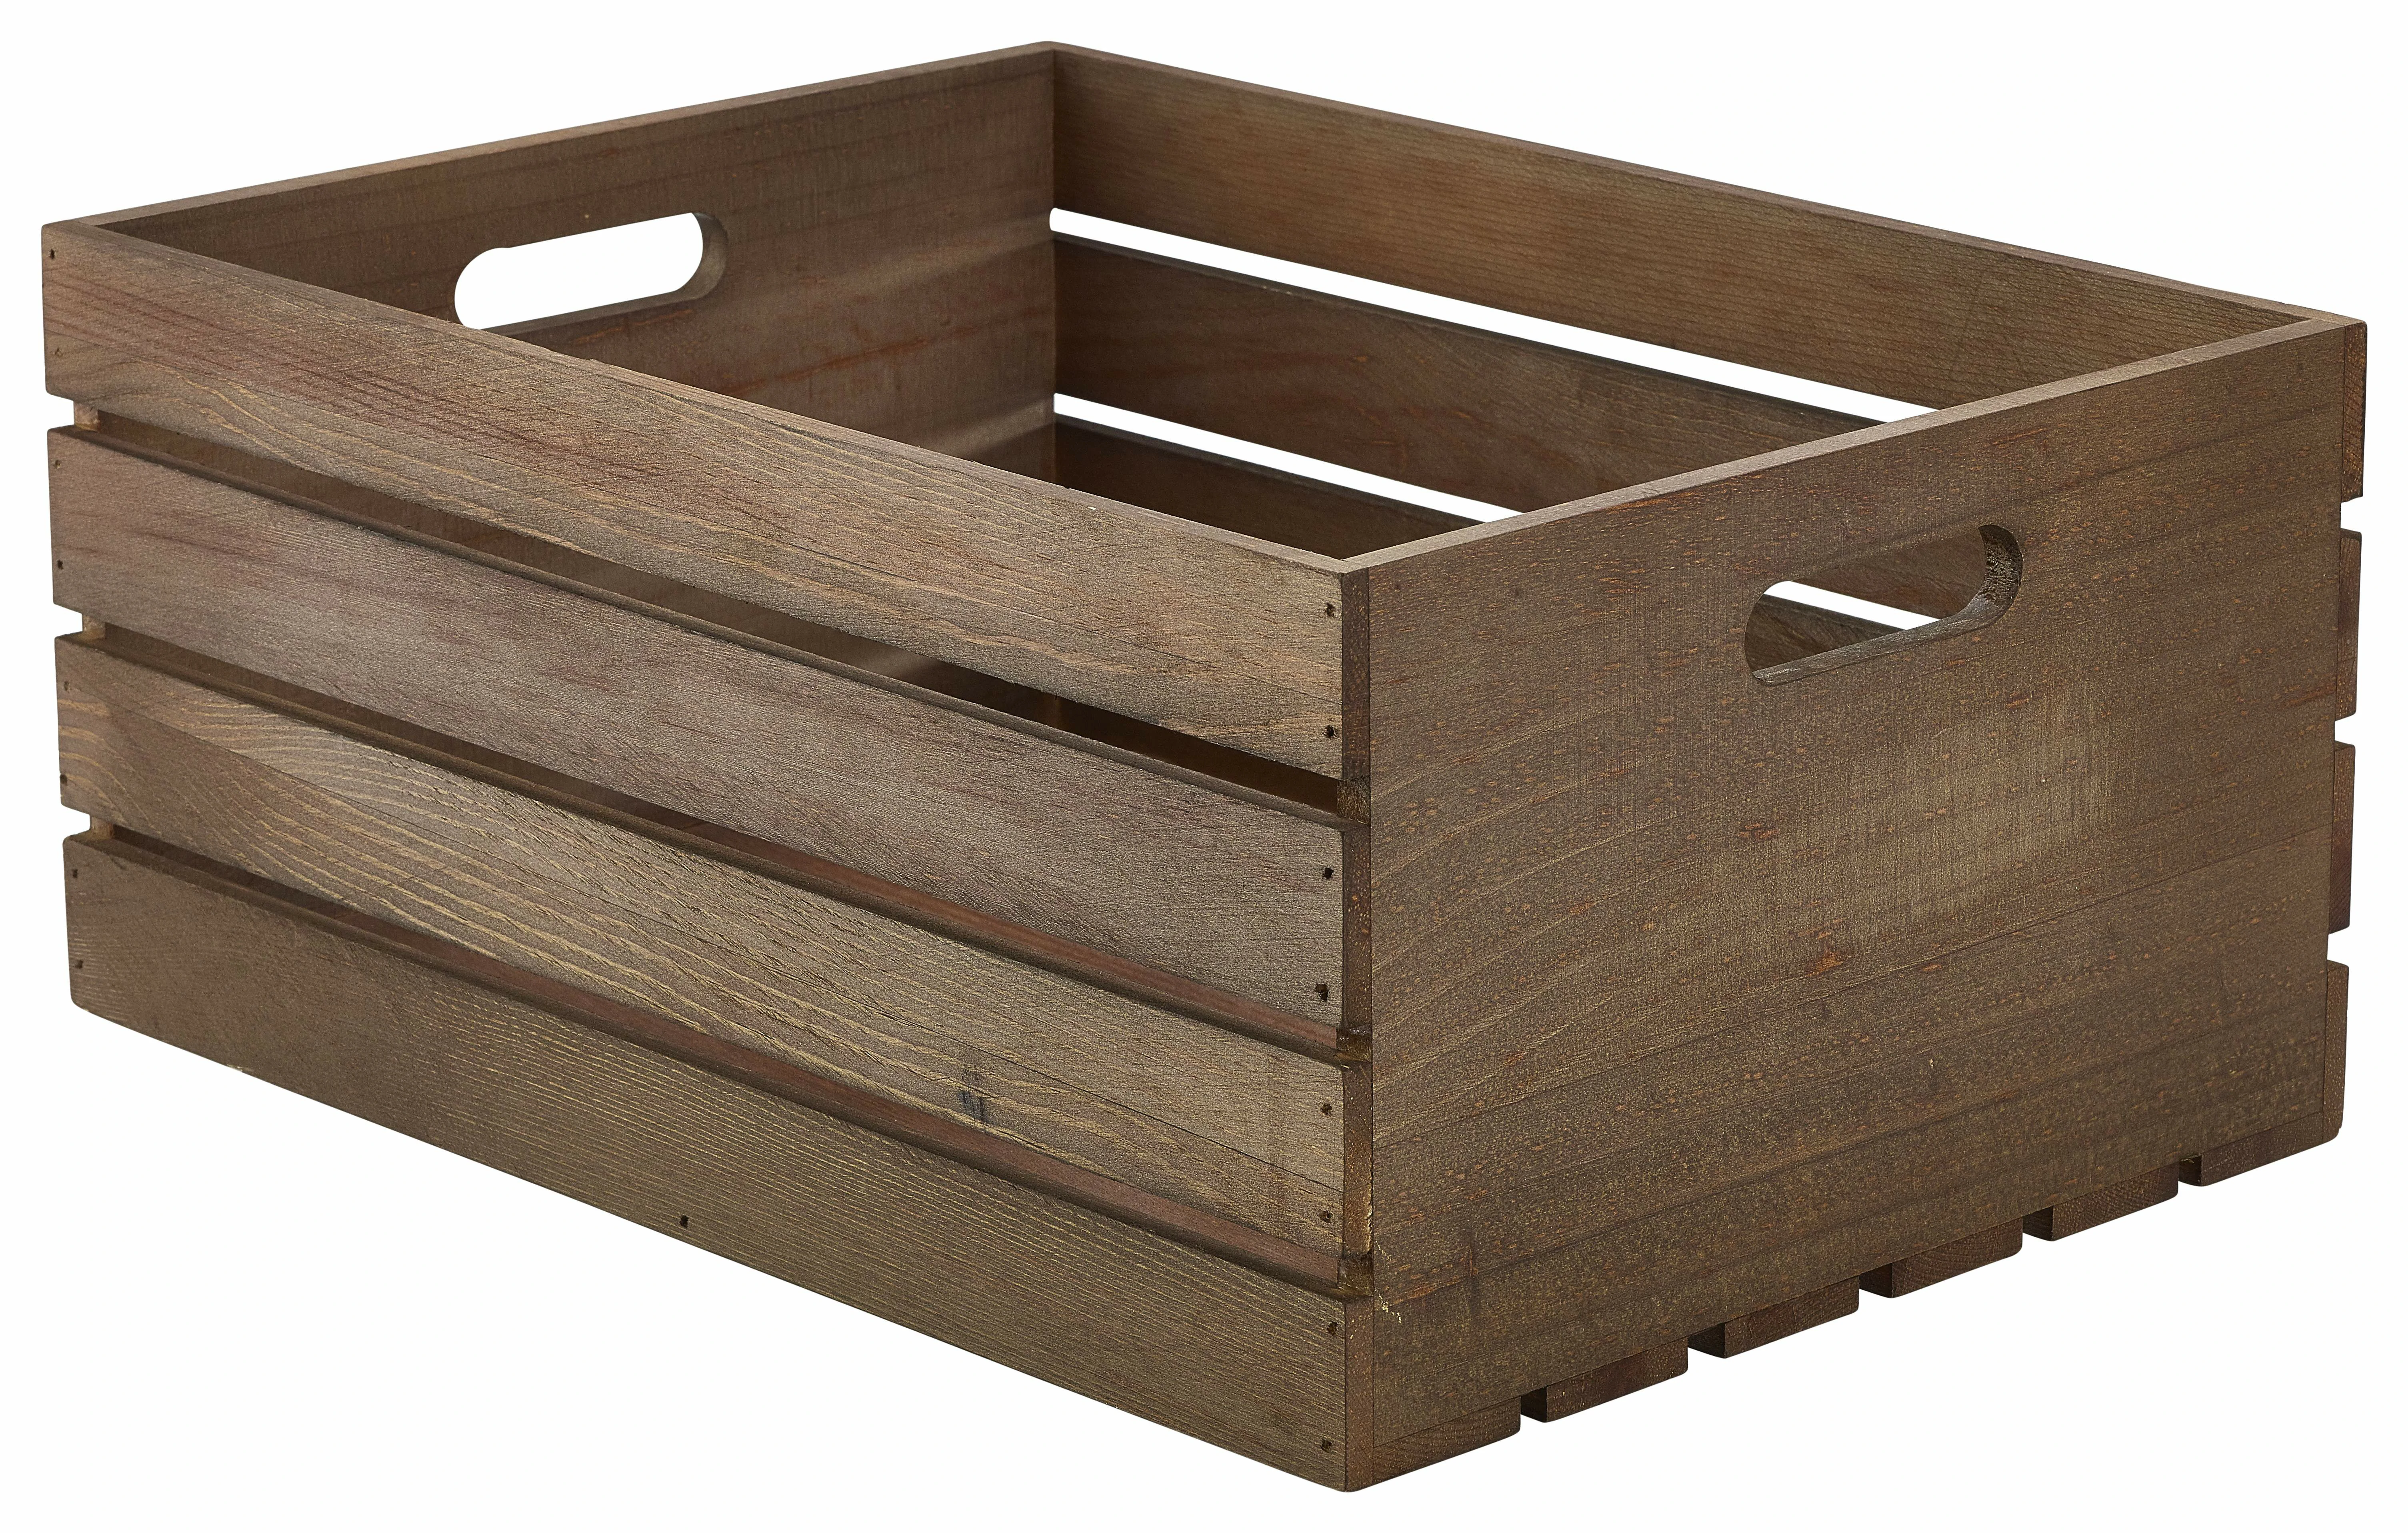 Genware Dark Rustic Wooden Crate 41 x 30 x 18cm